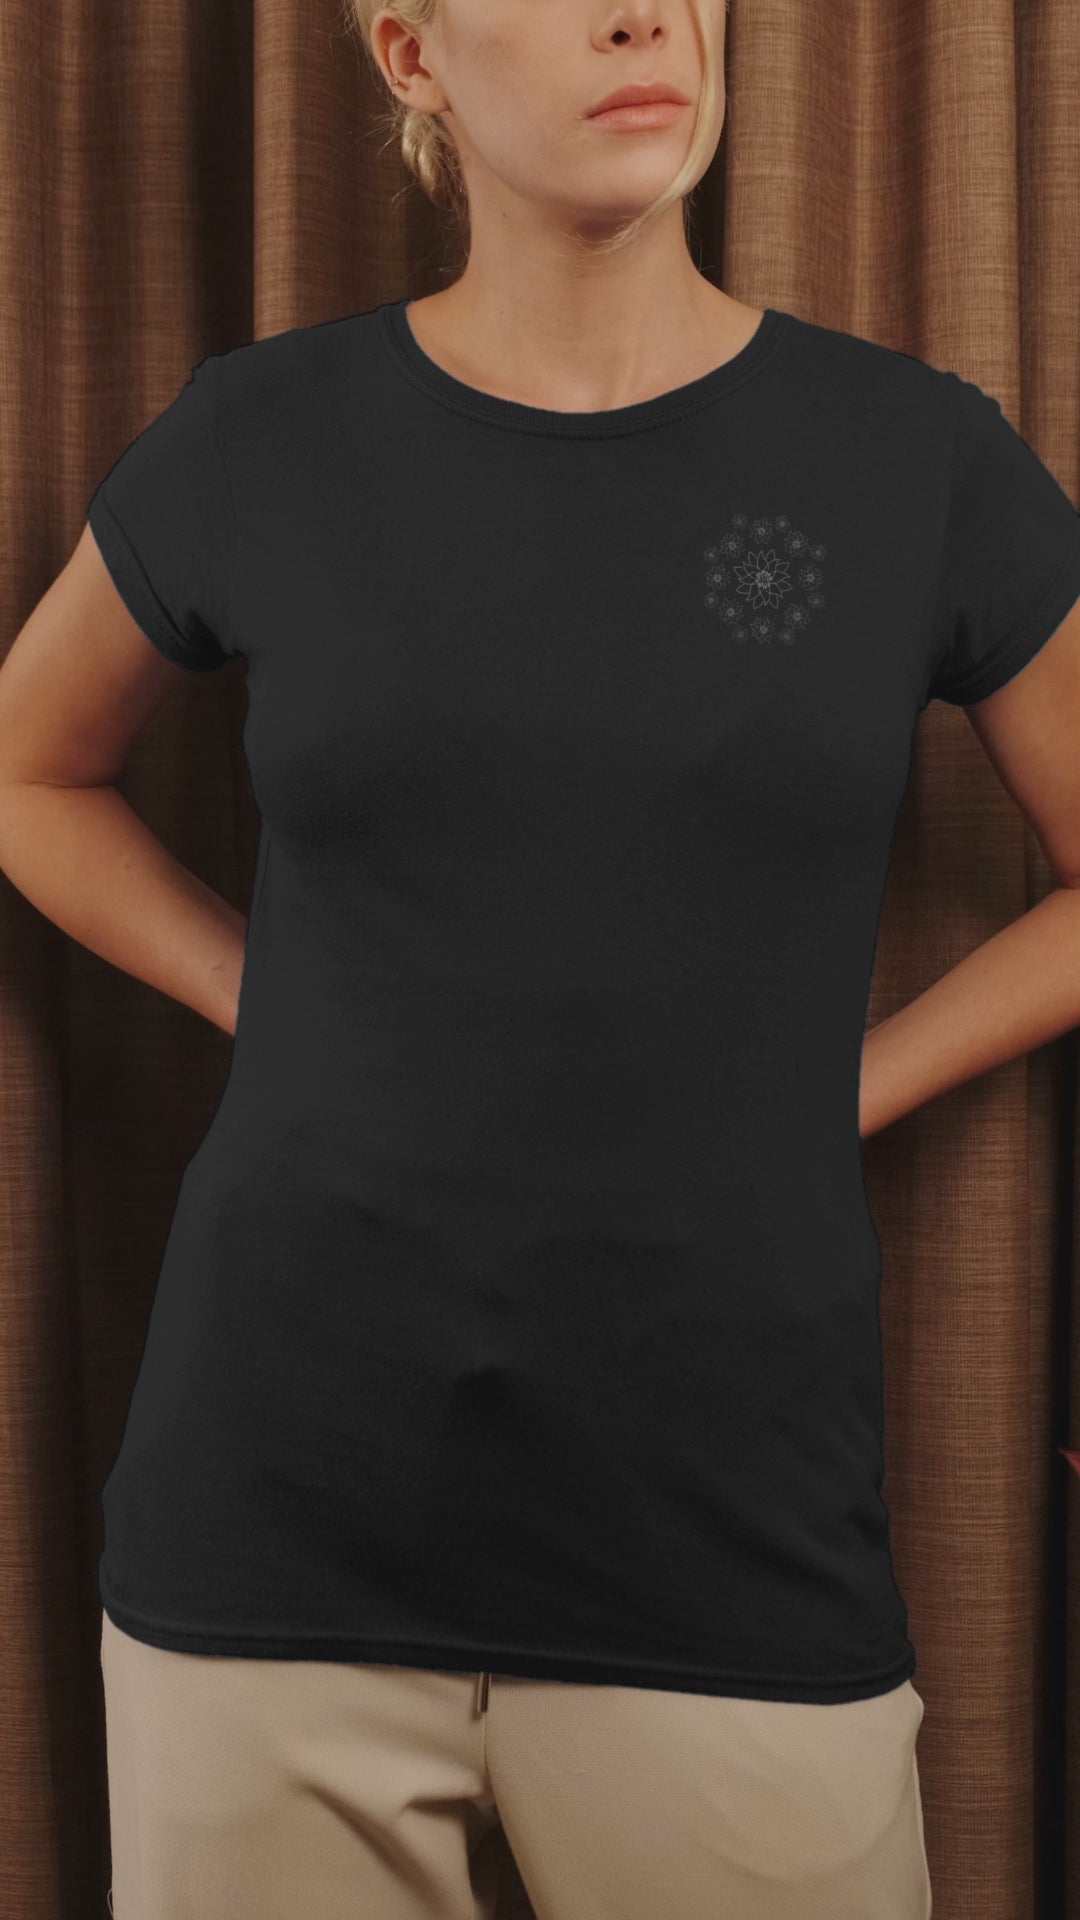 White Lotus Dream | 100% Organic Cotton T Shirt worn by a woman